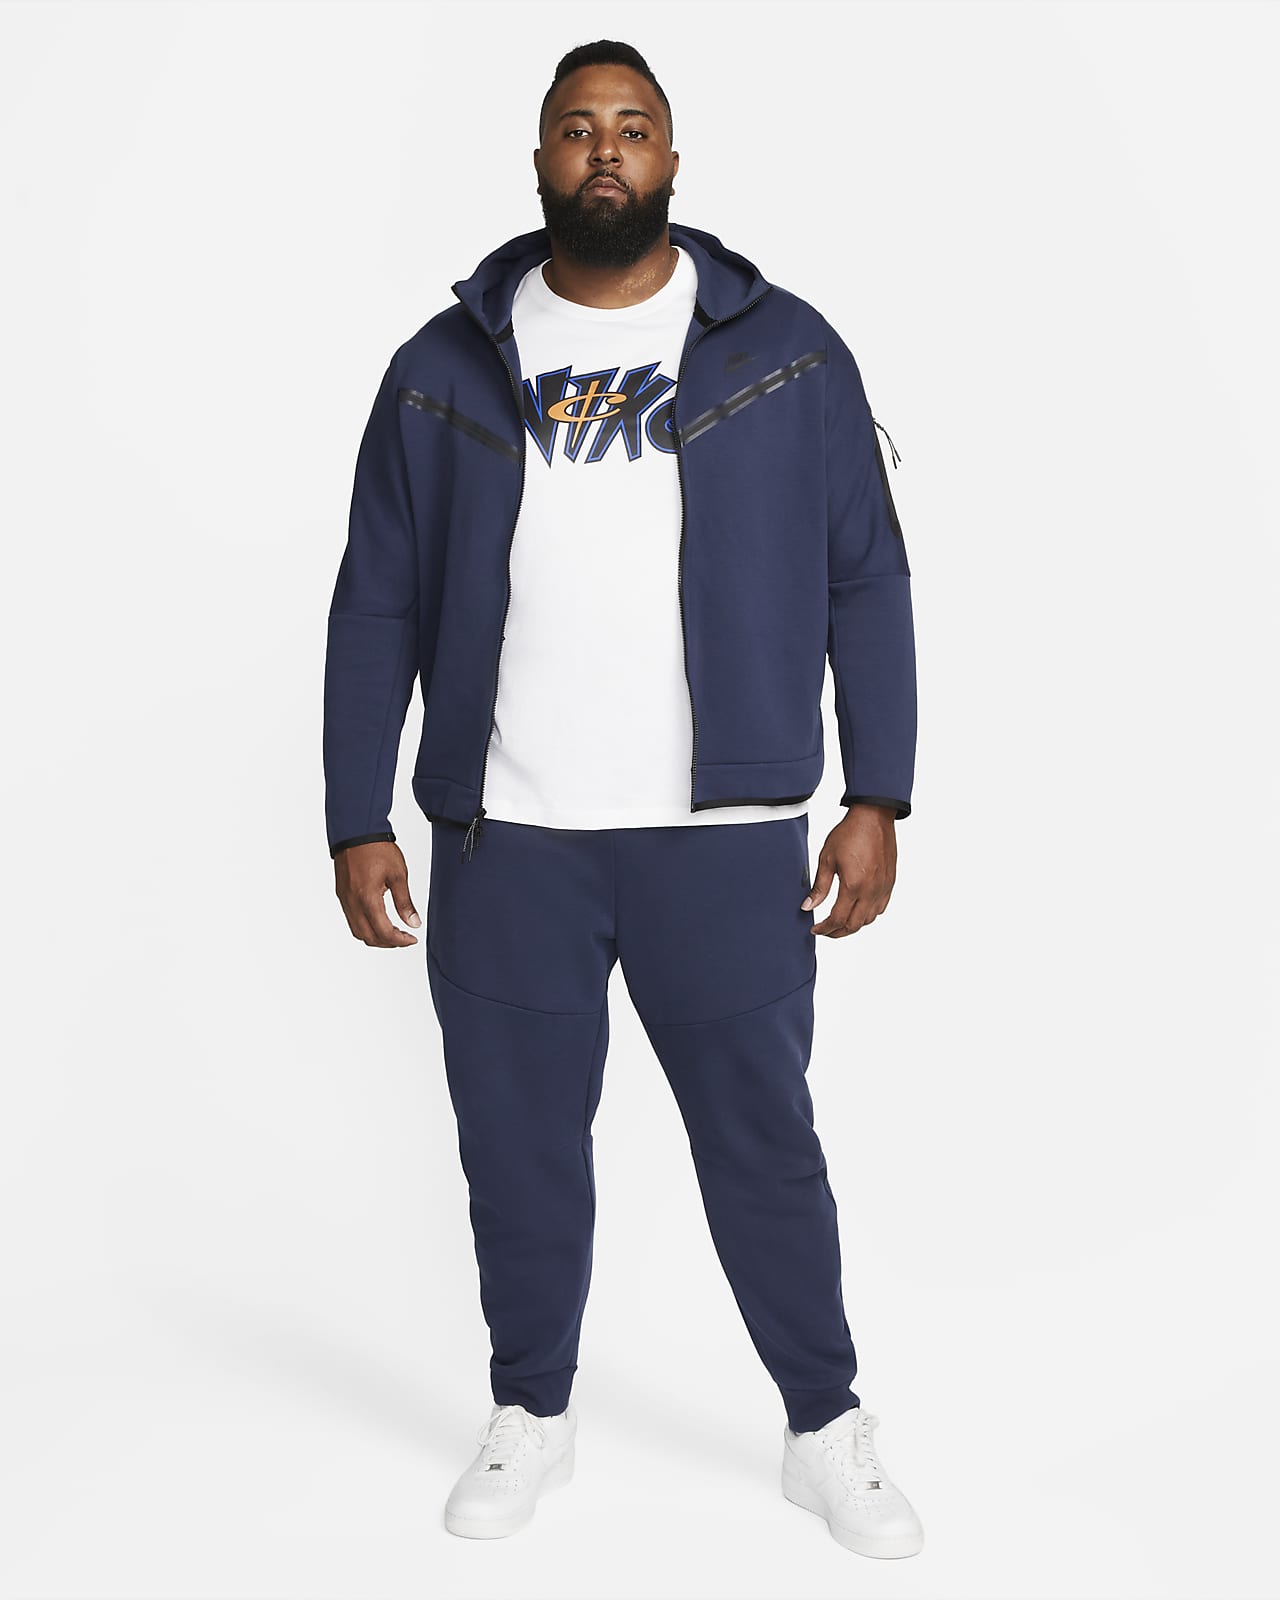 Nike Men's Sportswear Tech Fleece Full-Zip Hoodie-Black/Grey